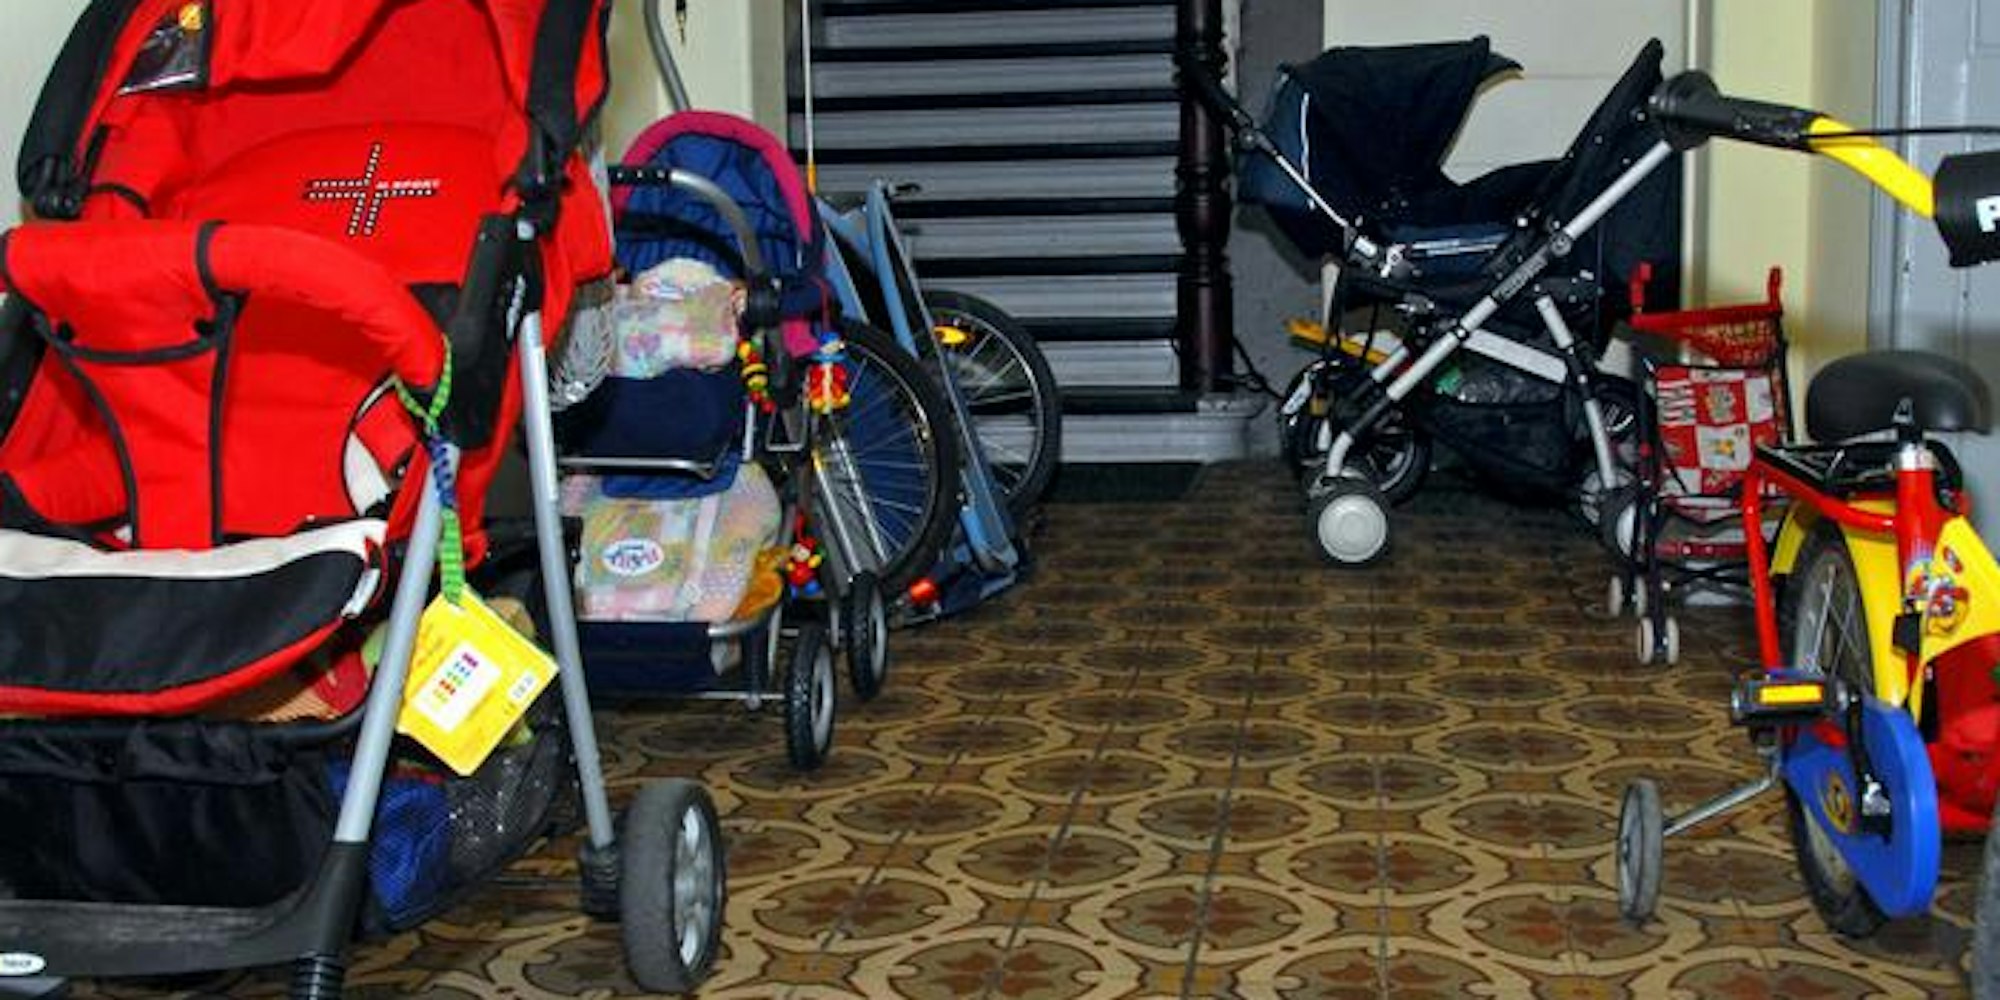 Die Hausordnung kann zum Beispiel regeln, dass keine Schuhregale im Hausflur erlaubt sind. Bestimmungen gegen Kinderwagen sind jedoch unzulässig, wenn es keine zumutbare Alternative gibt.